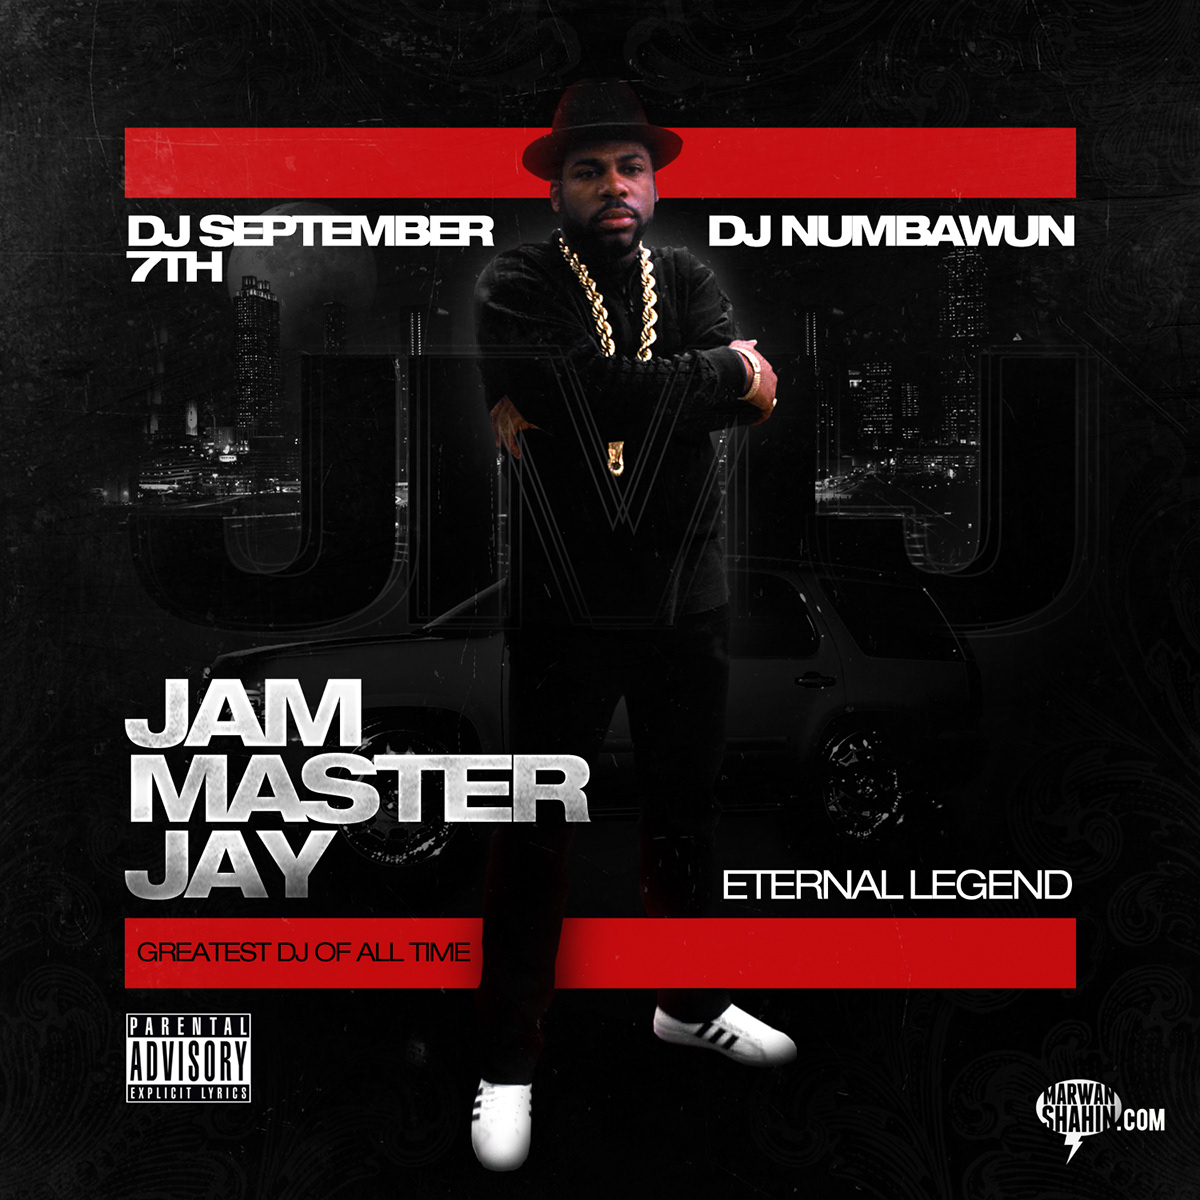 jmj run dmc hip hop rap eternal legend legend RIP Jam Master Jay 50 cent mixtape cover